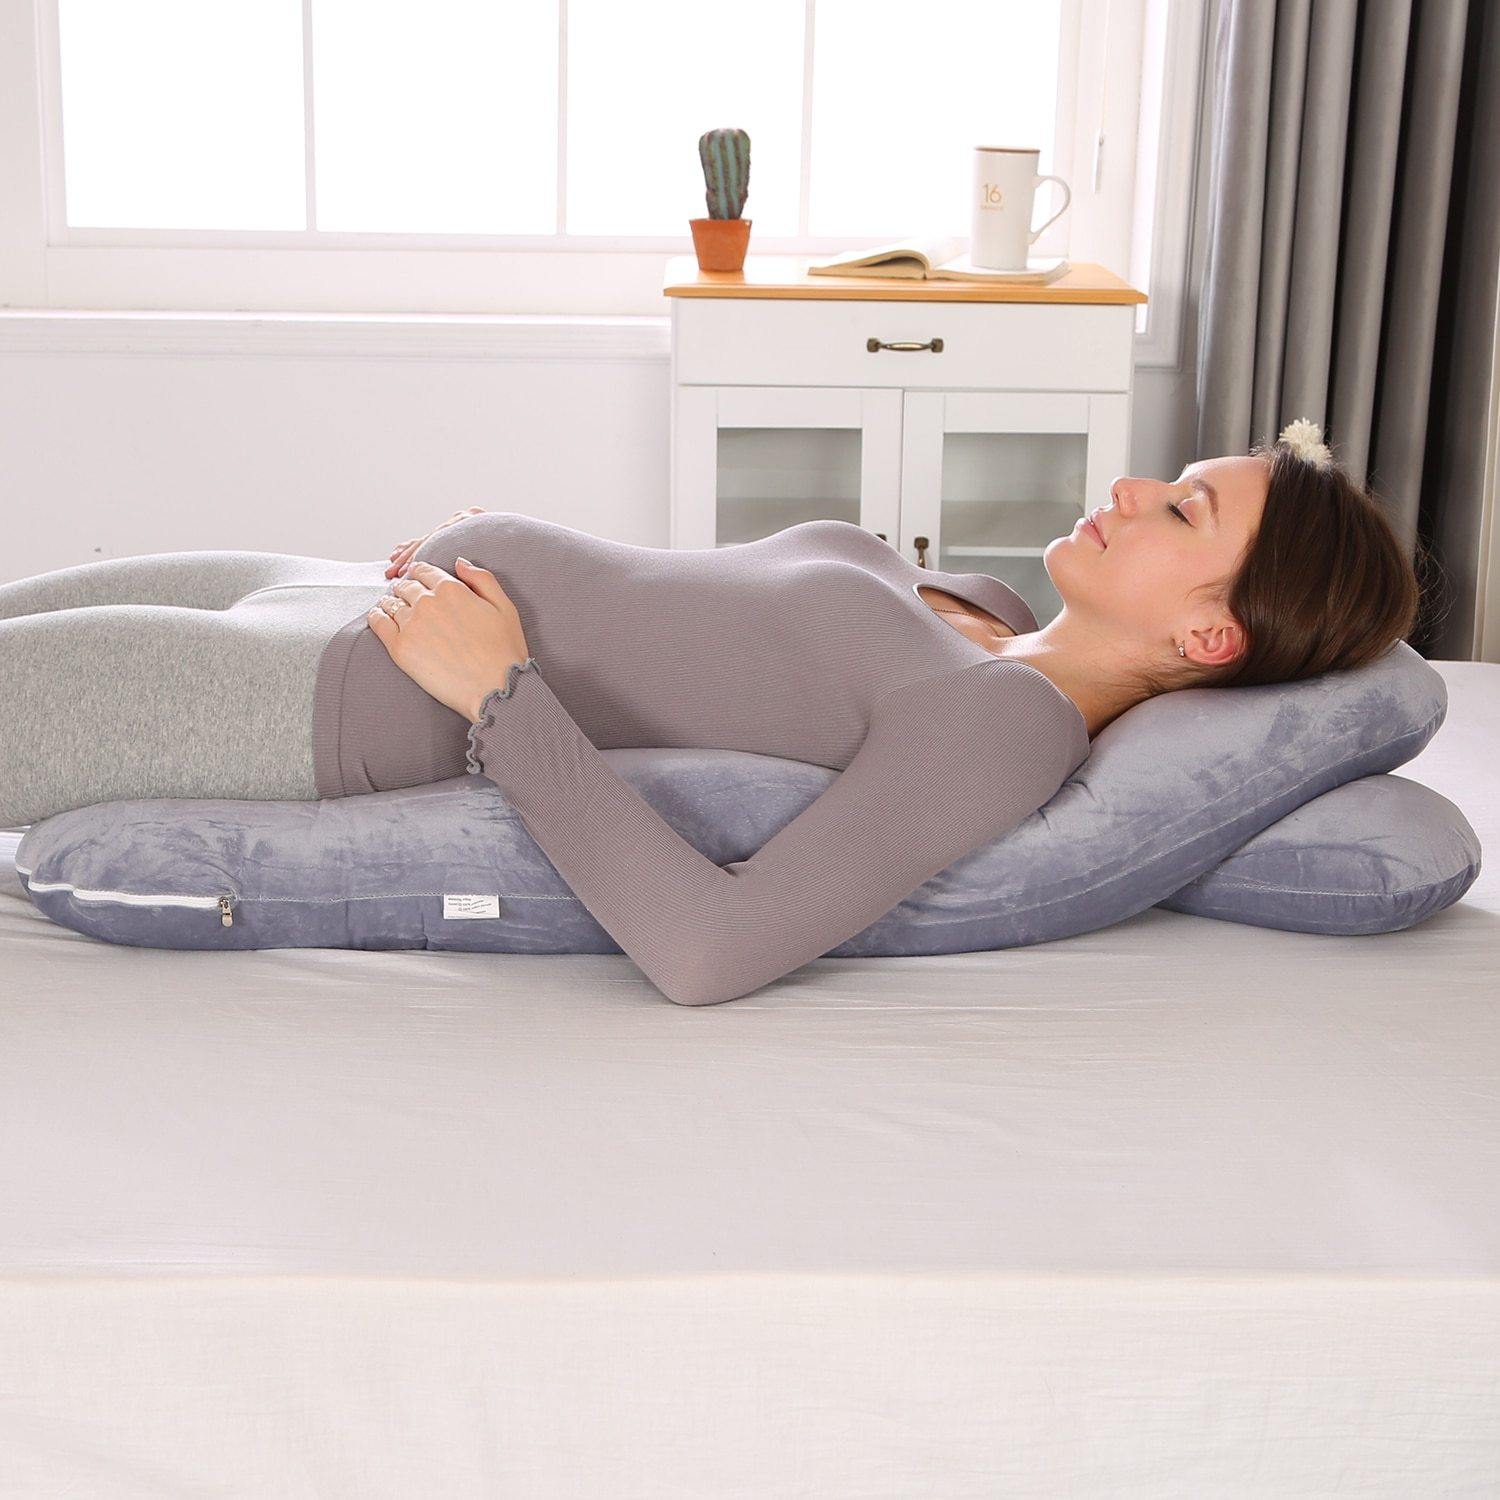 https://www.babybubblestore.com/cdn/shop/products/women-u-shape-pregnancy-body-pillow-women-u-shape-pregnancy-body-pillow-baby-bubble-store-462582.jpg?v=1660135741